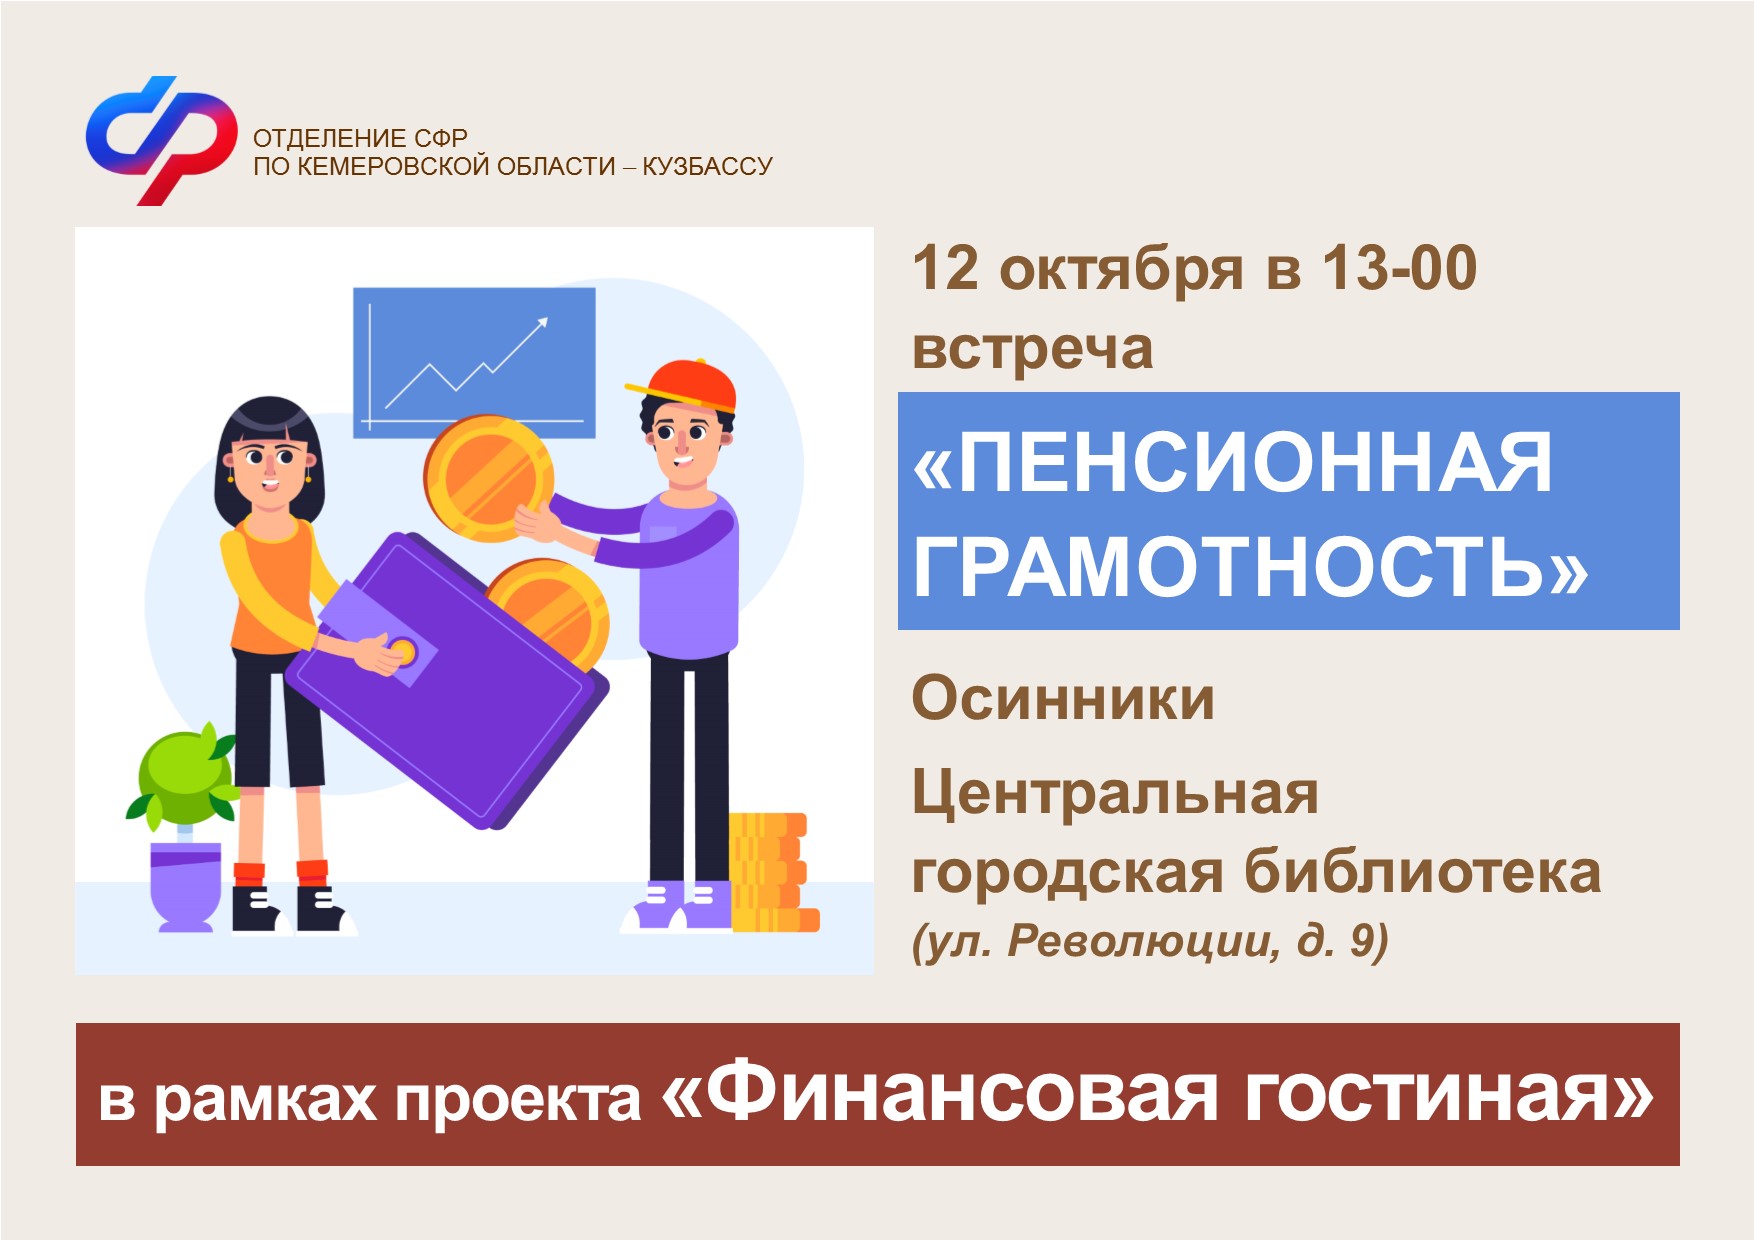 В Центральной городской библиотеке Осинников пройдет встреча «Пенсионная грамотность»